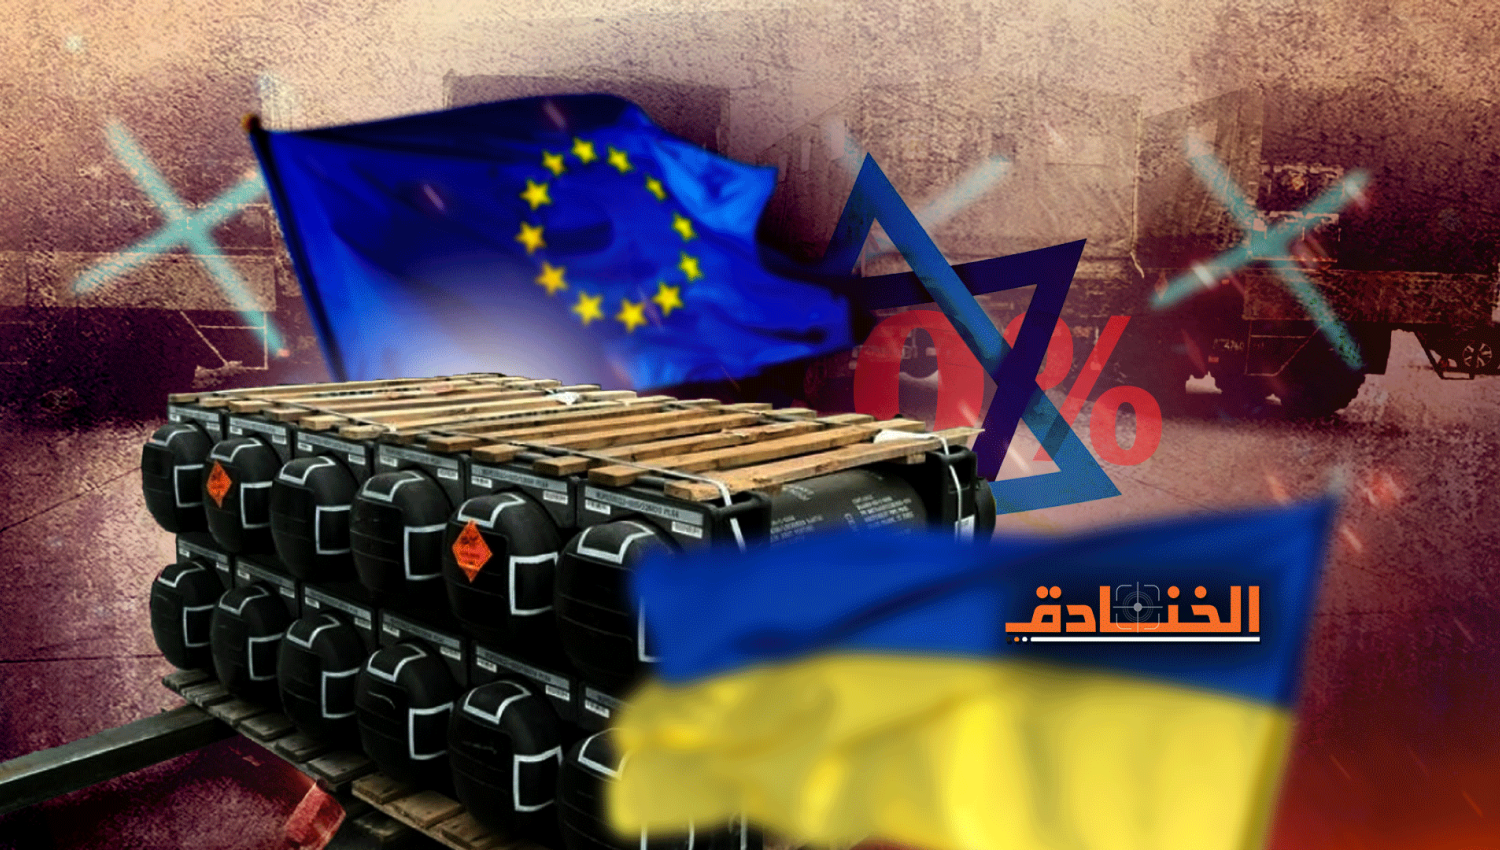 التسليح الاسرائيلي لاوكرانيا يساوي صفراً: روسيا فرضت خطوطها الحمر! 